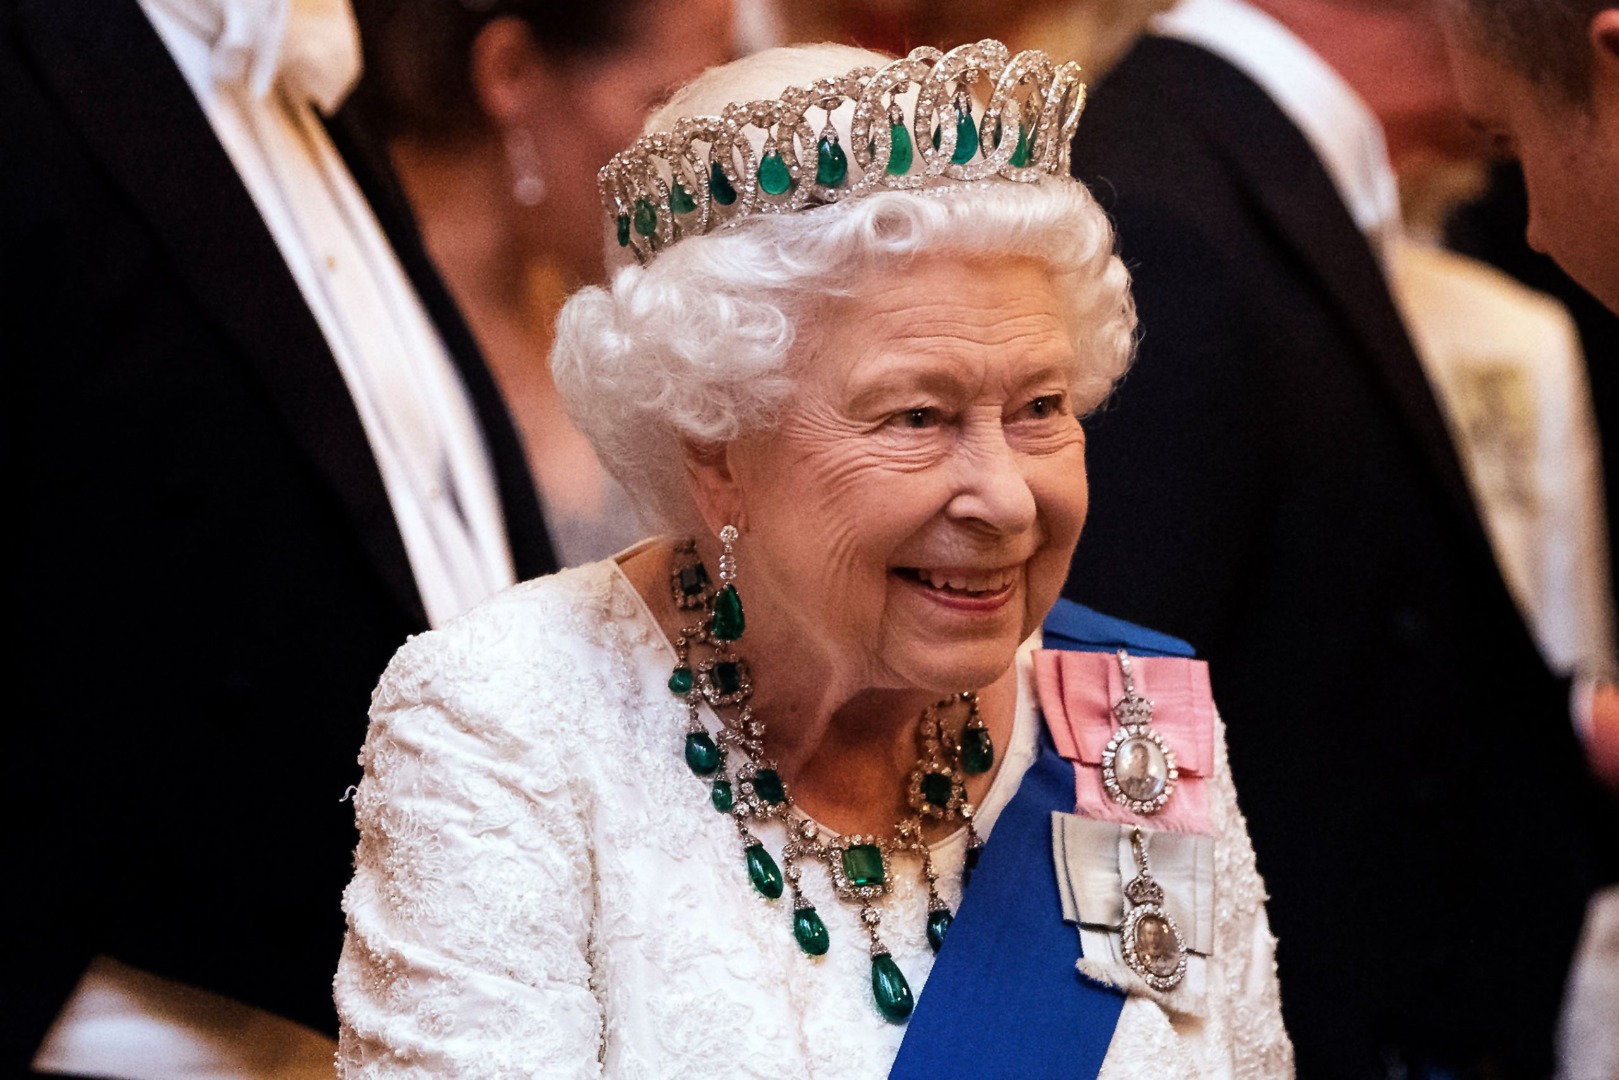 Kraliçe Elizabeth’in ölüm tarihini bilen hesap Kral Charles için de tarih verdi 53